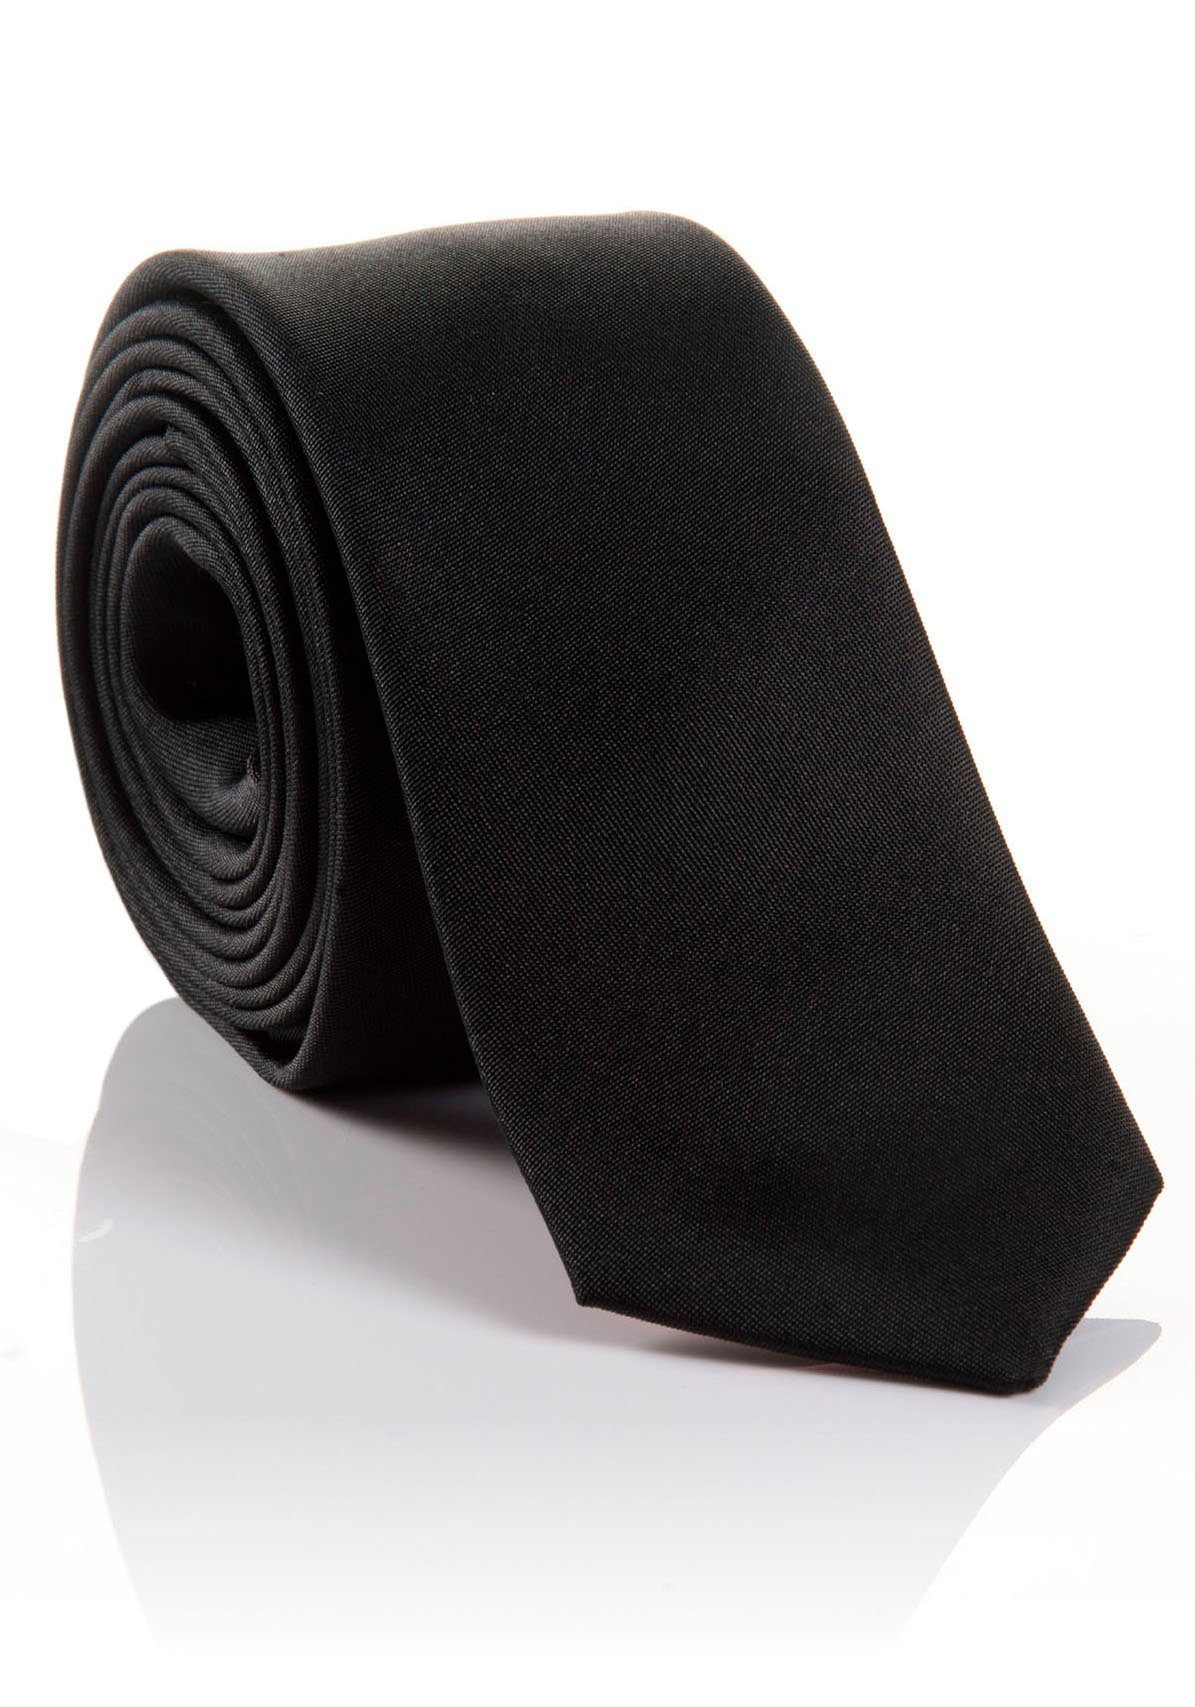 Seidenkrawatte verarbeitete Krawatte MONTI LORENZO Tragekomfort mit Hochwertig hohem black